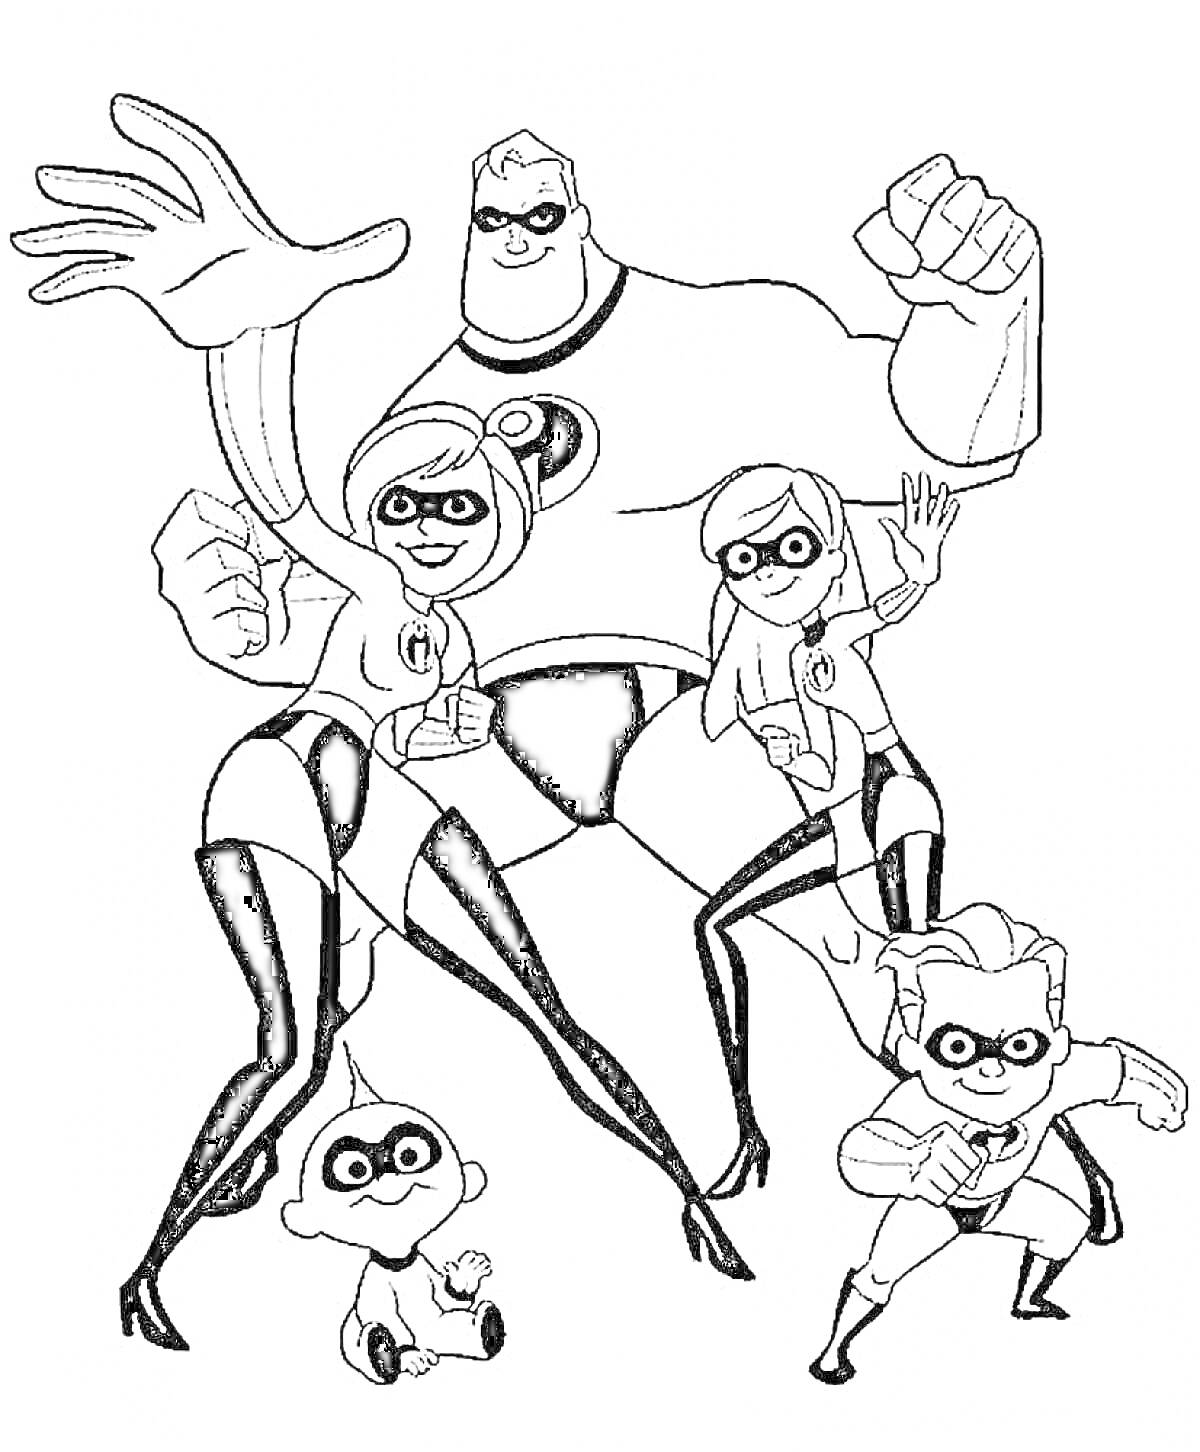 Раскраска Семья супергероев, состоящая из пяти человек, в различных супергеройских позах и в костюмах с эмблемой на груди. На переднем плане маленький ребёнок.